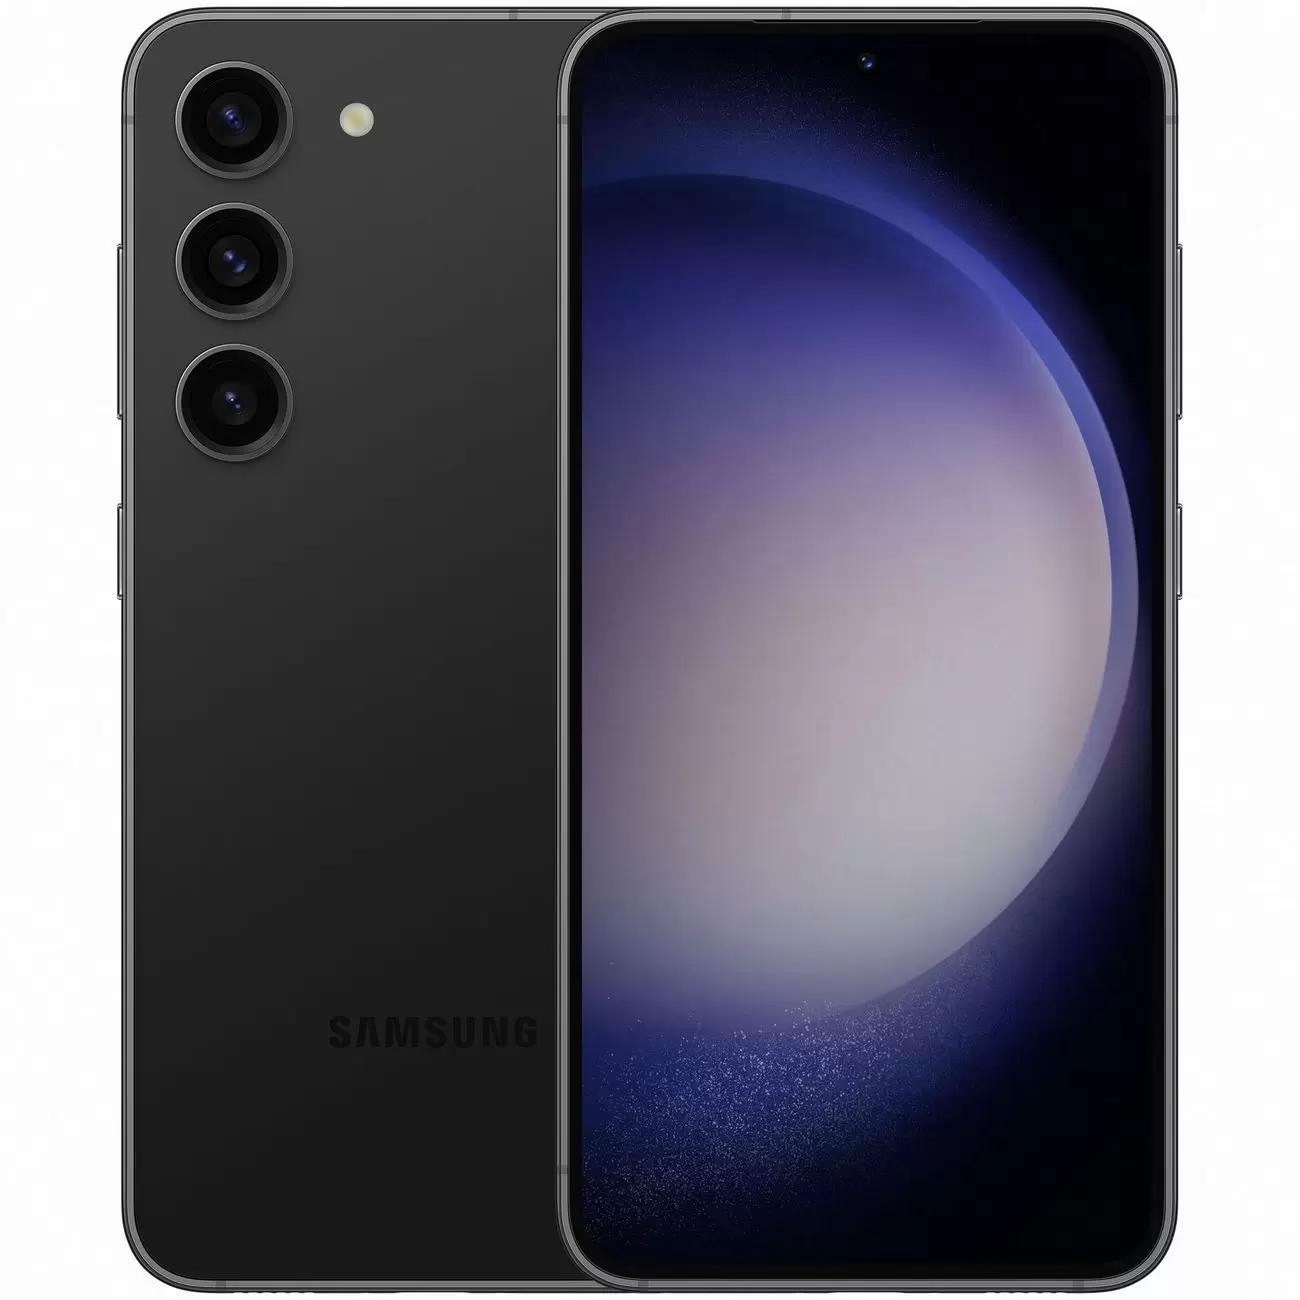 Купить смартфон samsung galaxy s23+ 8/512gb phantom black S-Серия в официальном магазине Apple, Samsung, Xiaomi. iPixel.ru Купить, заказ, кредит, рассрочка, отзывы,  характеристики, цена,  фотографии, в подарок.